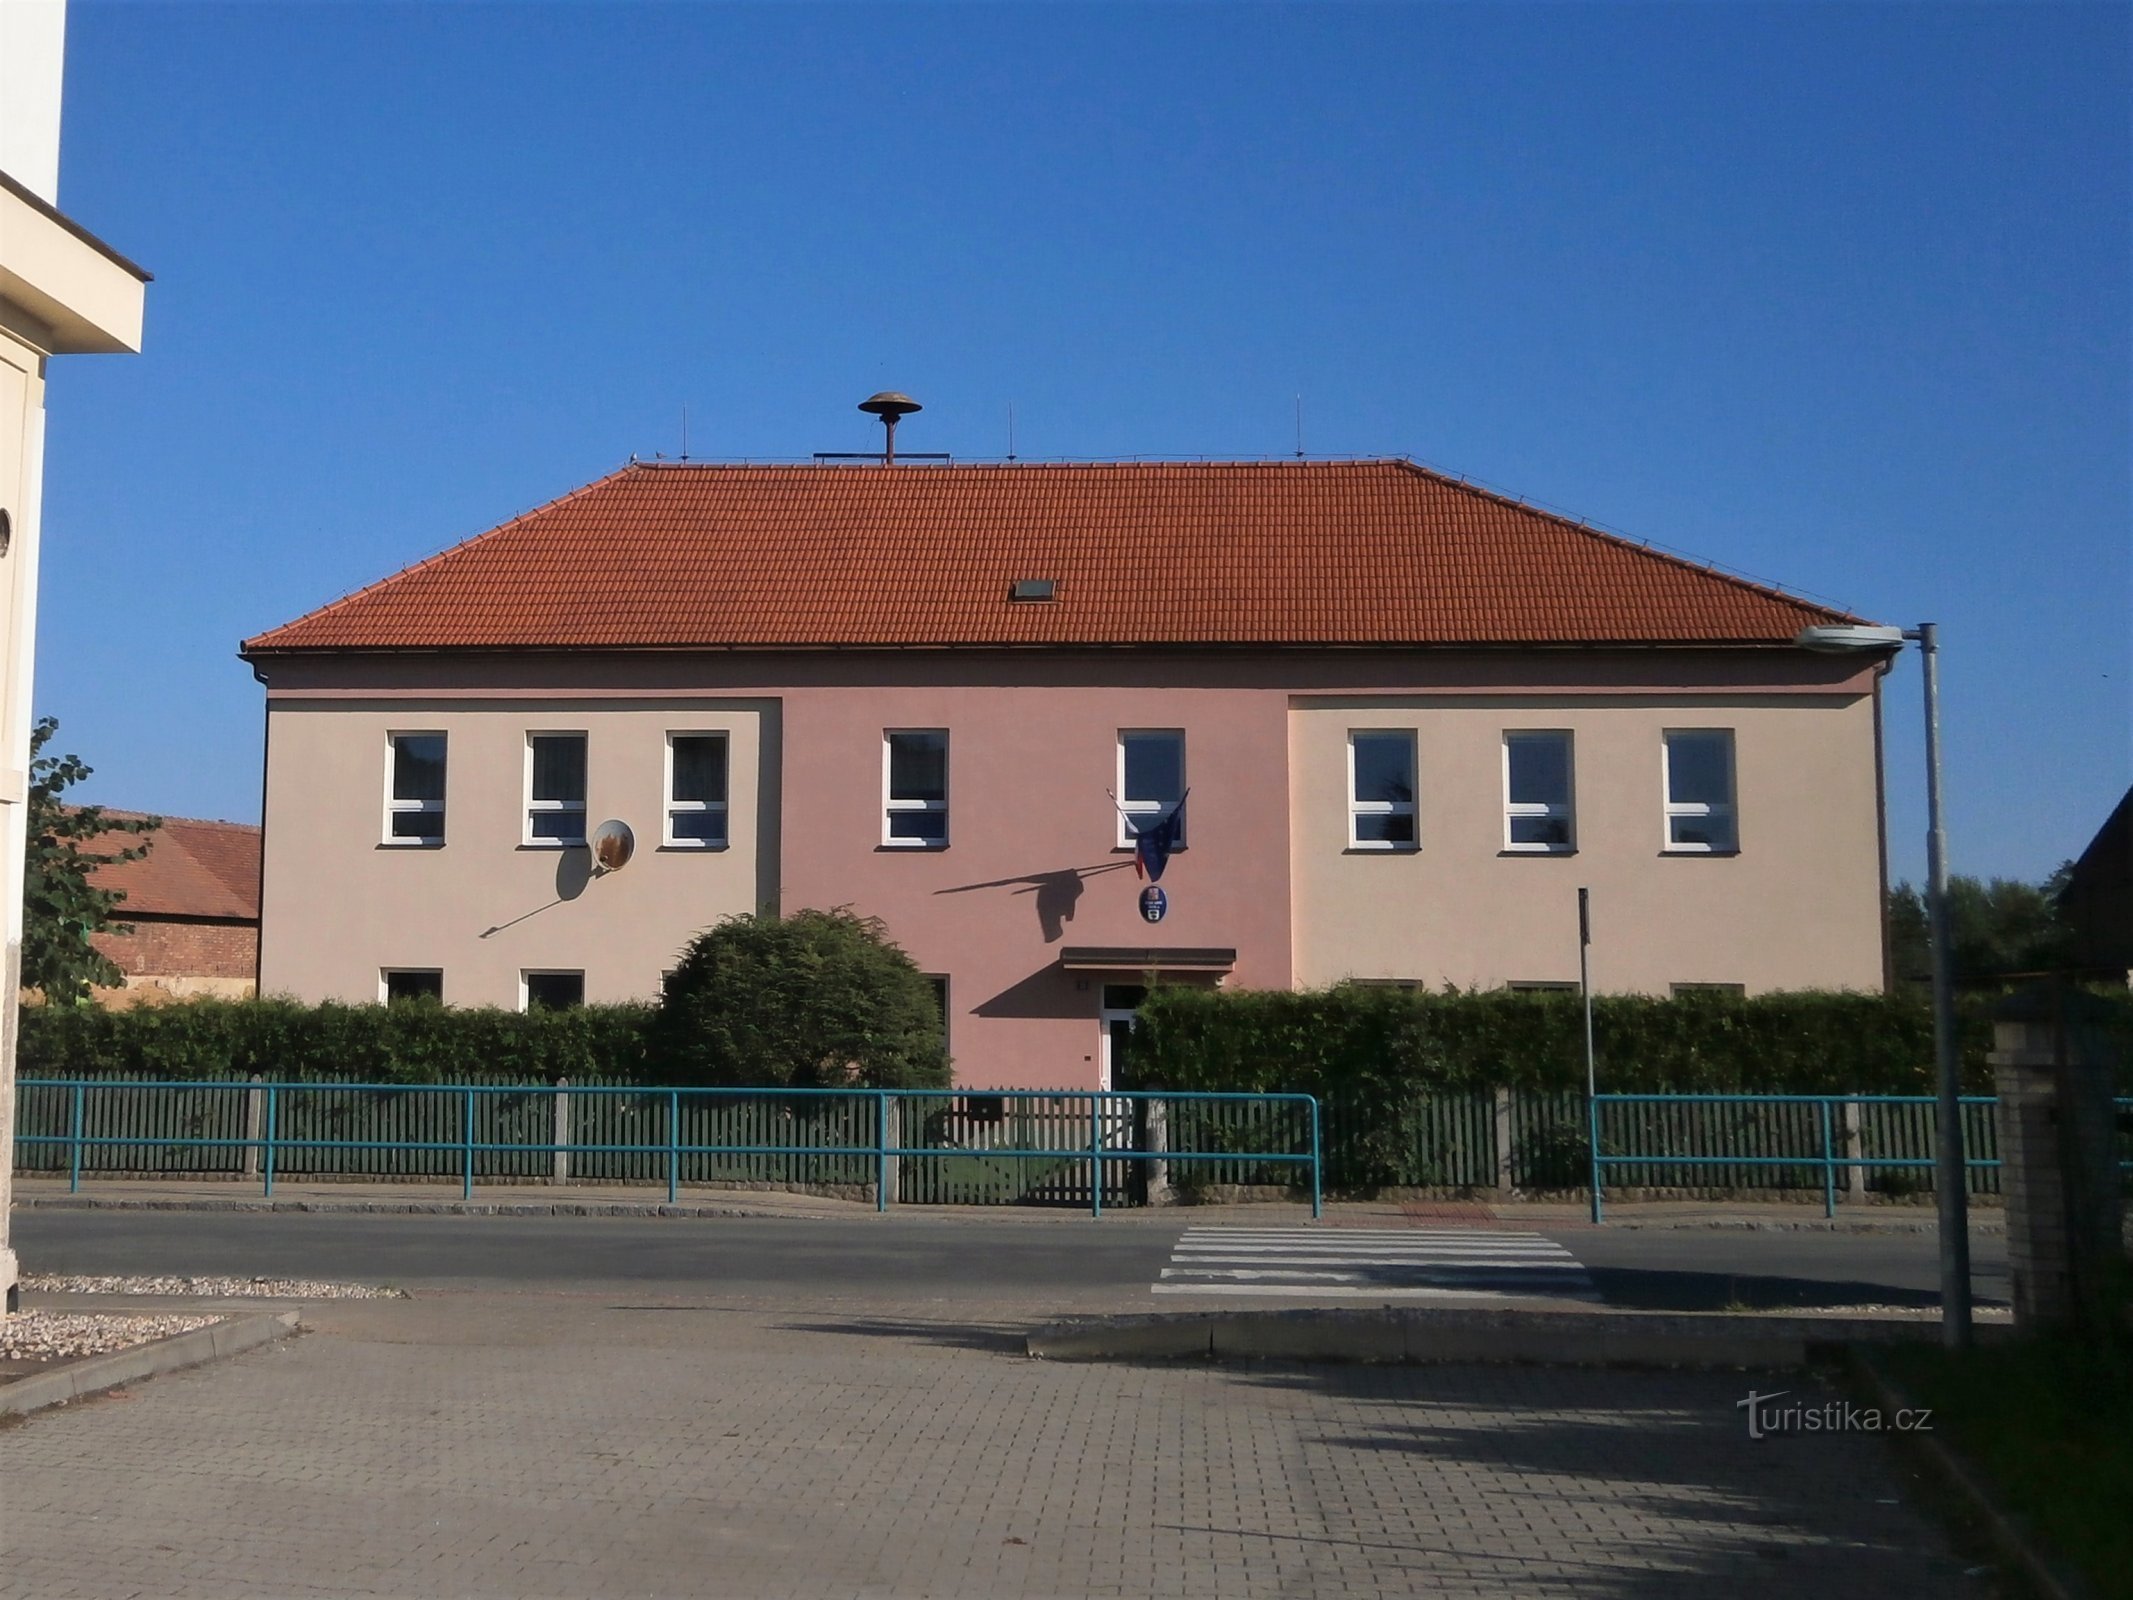 School (Staré Ždánice, 30.7.2017/XNUMX/XNUMX)